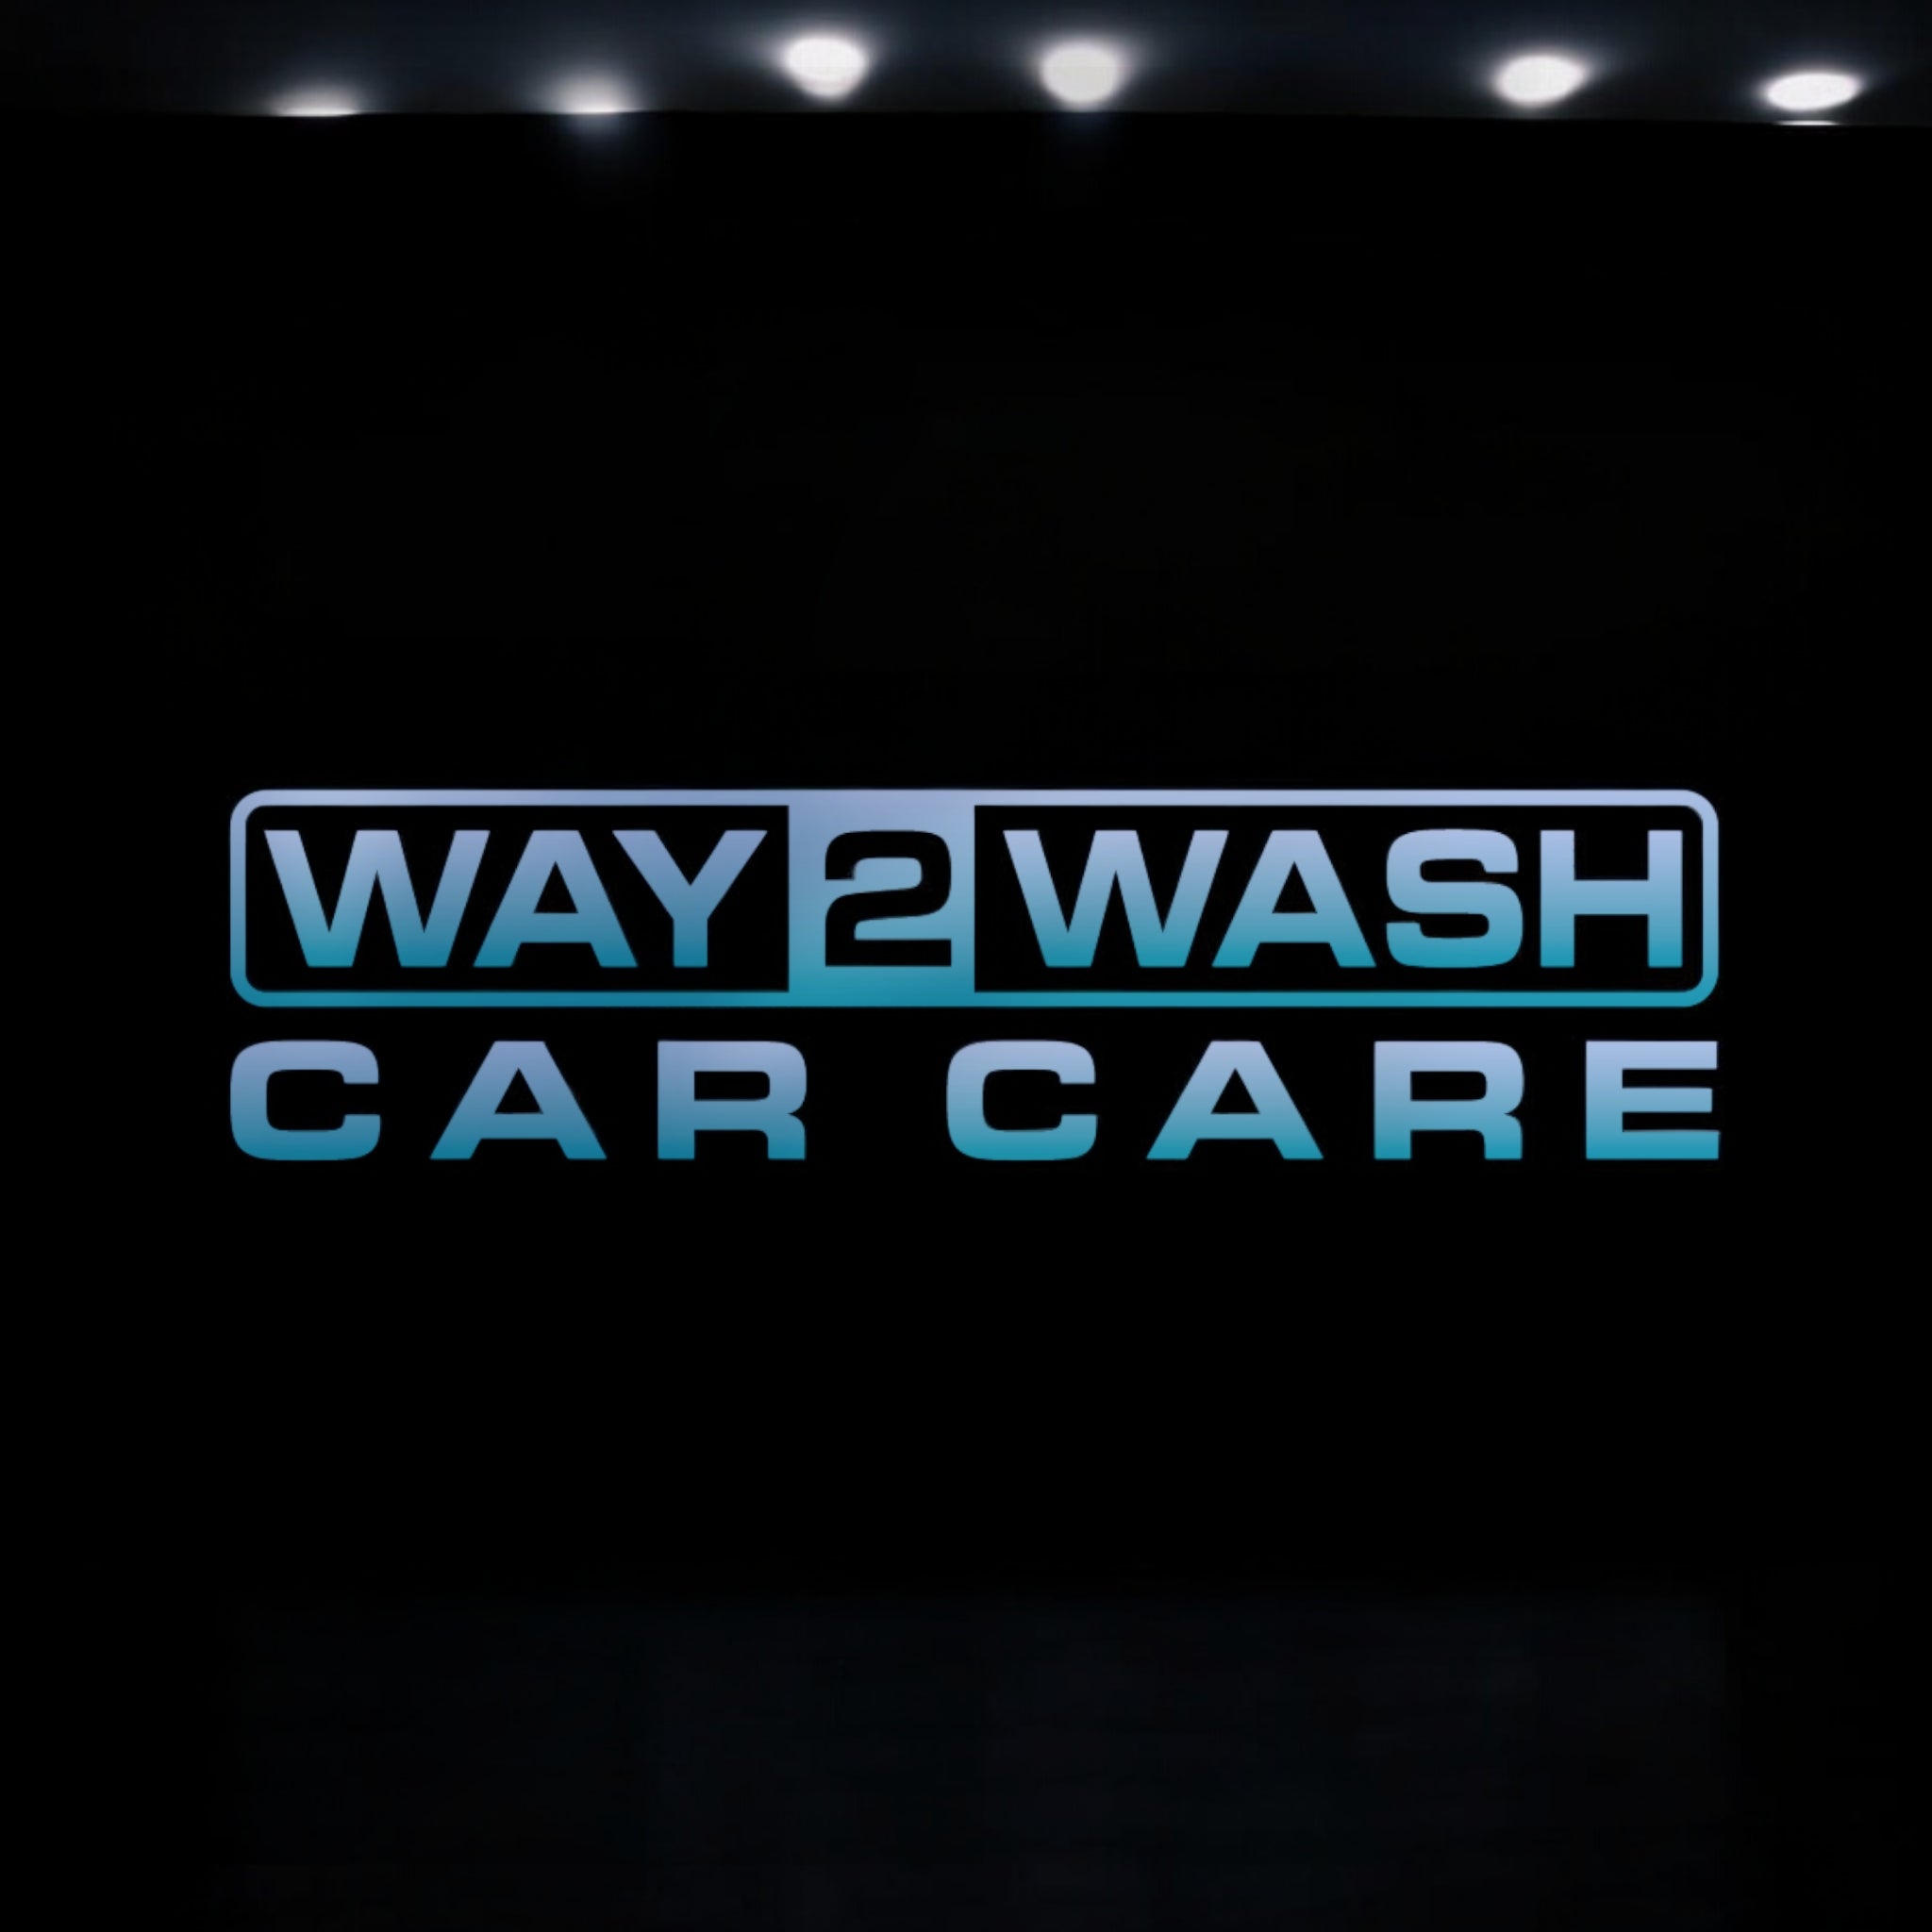 WAY2WASH CAR CARE